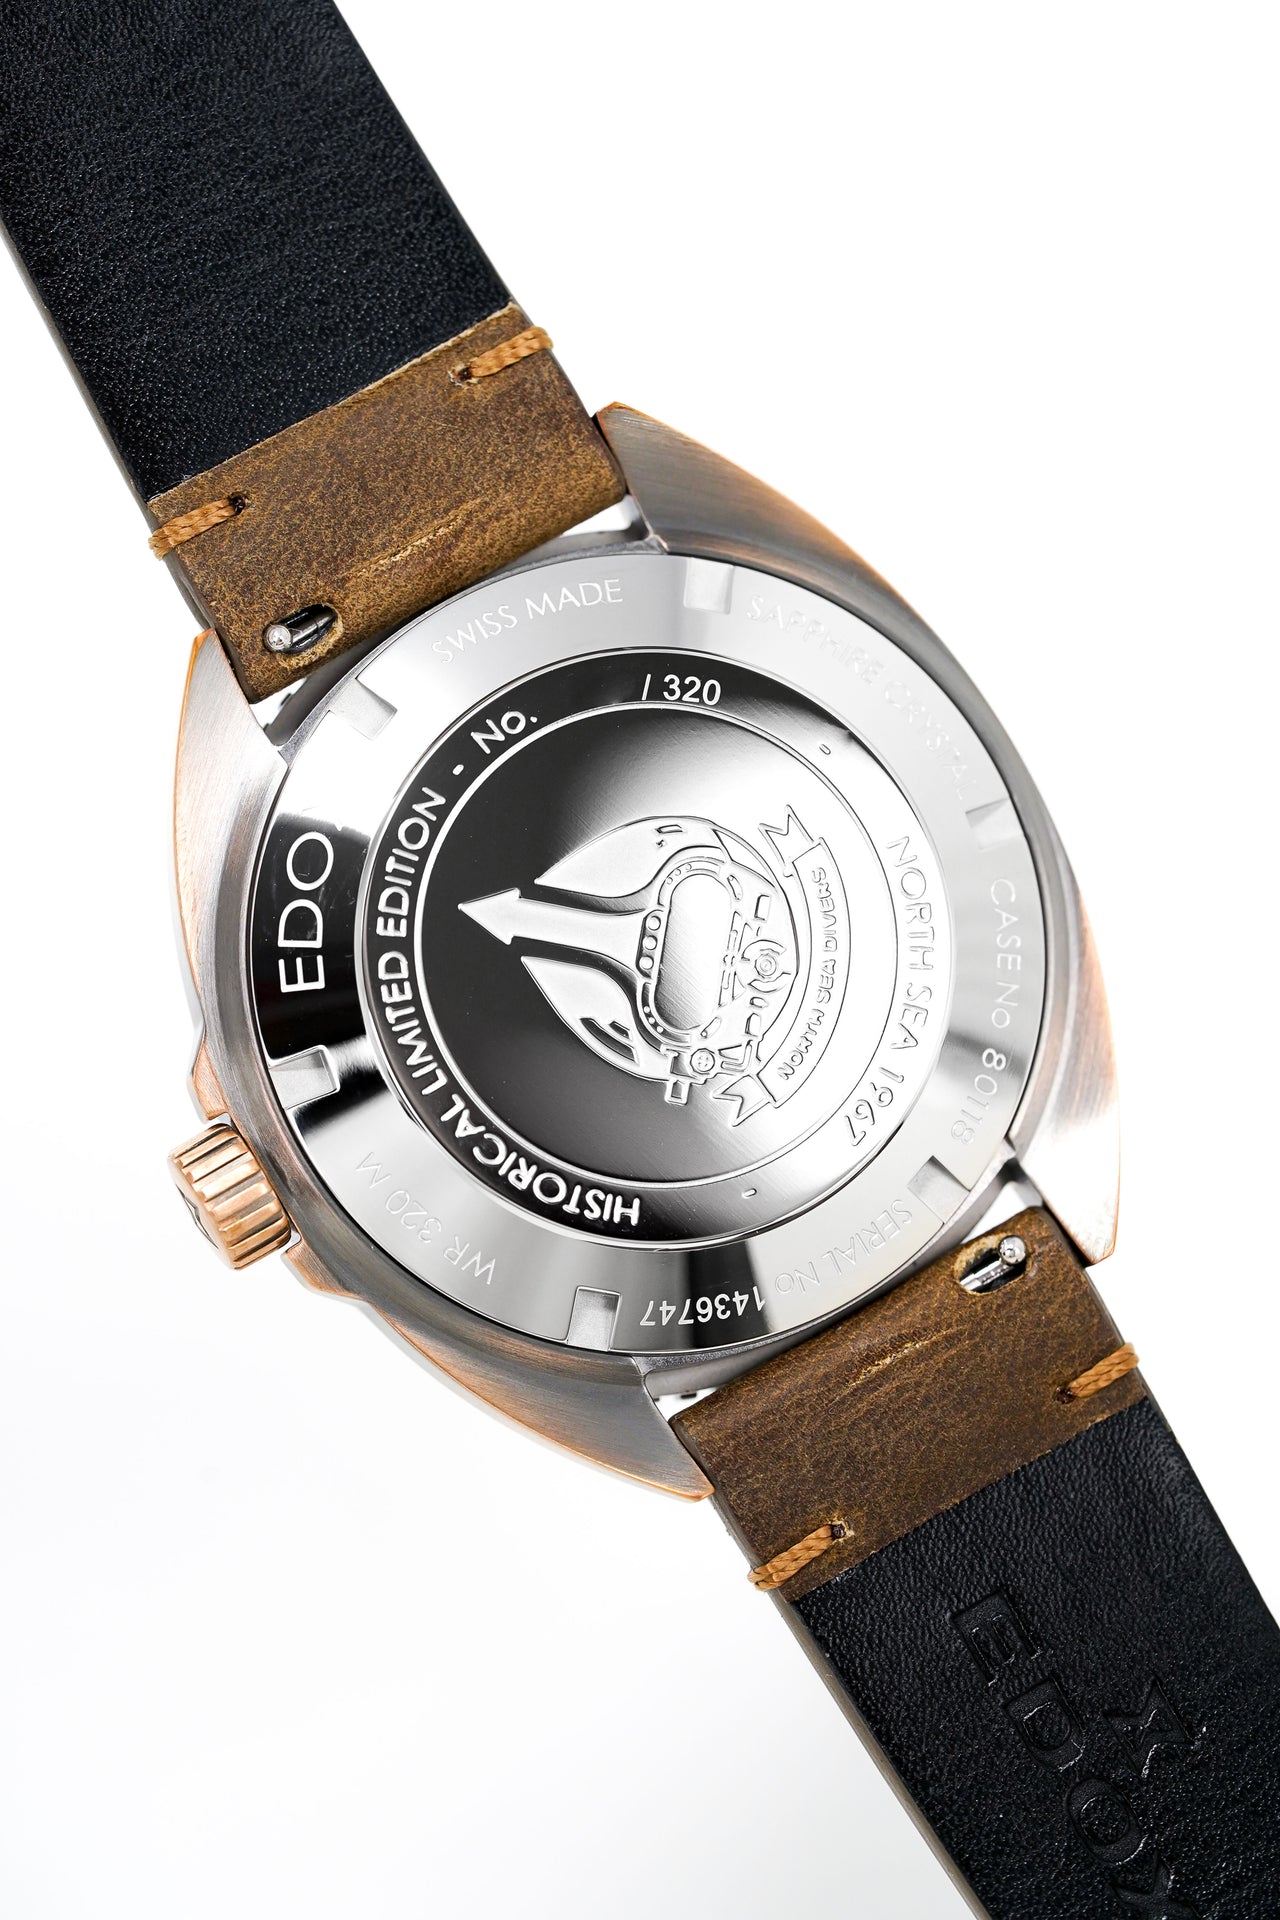 Edox Watch North Sea 1967 Limited Edition Bronze 80118-BRN-BU1